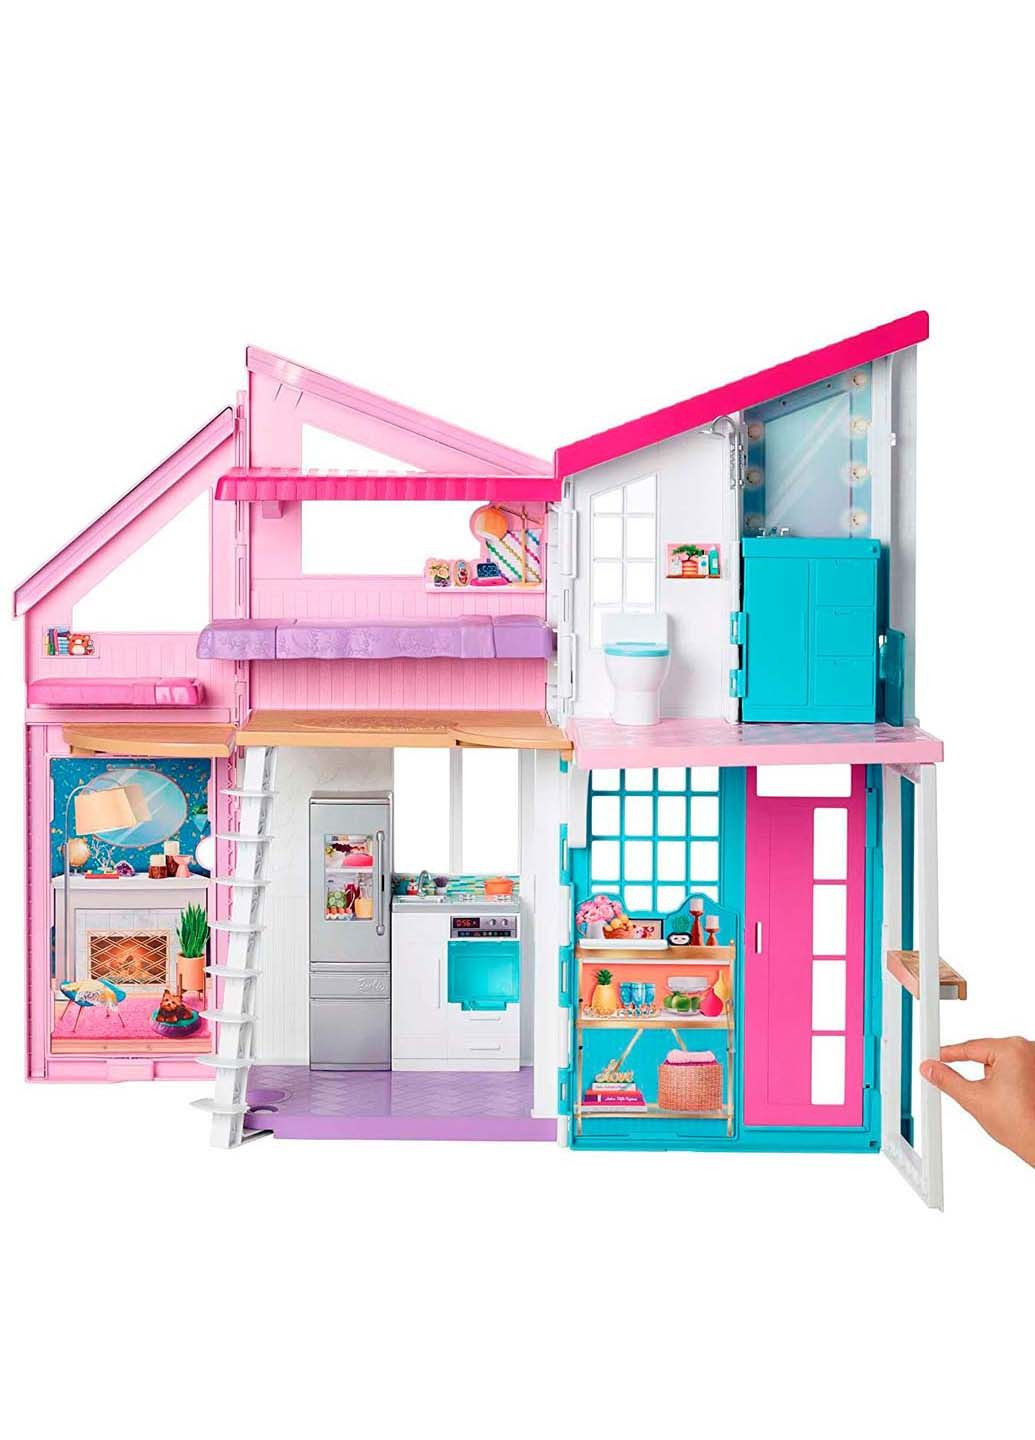 Игровой набор House в Малибу на 6 комнат Mattel (278263264)